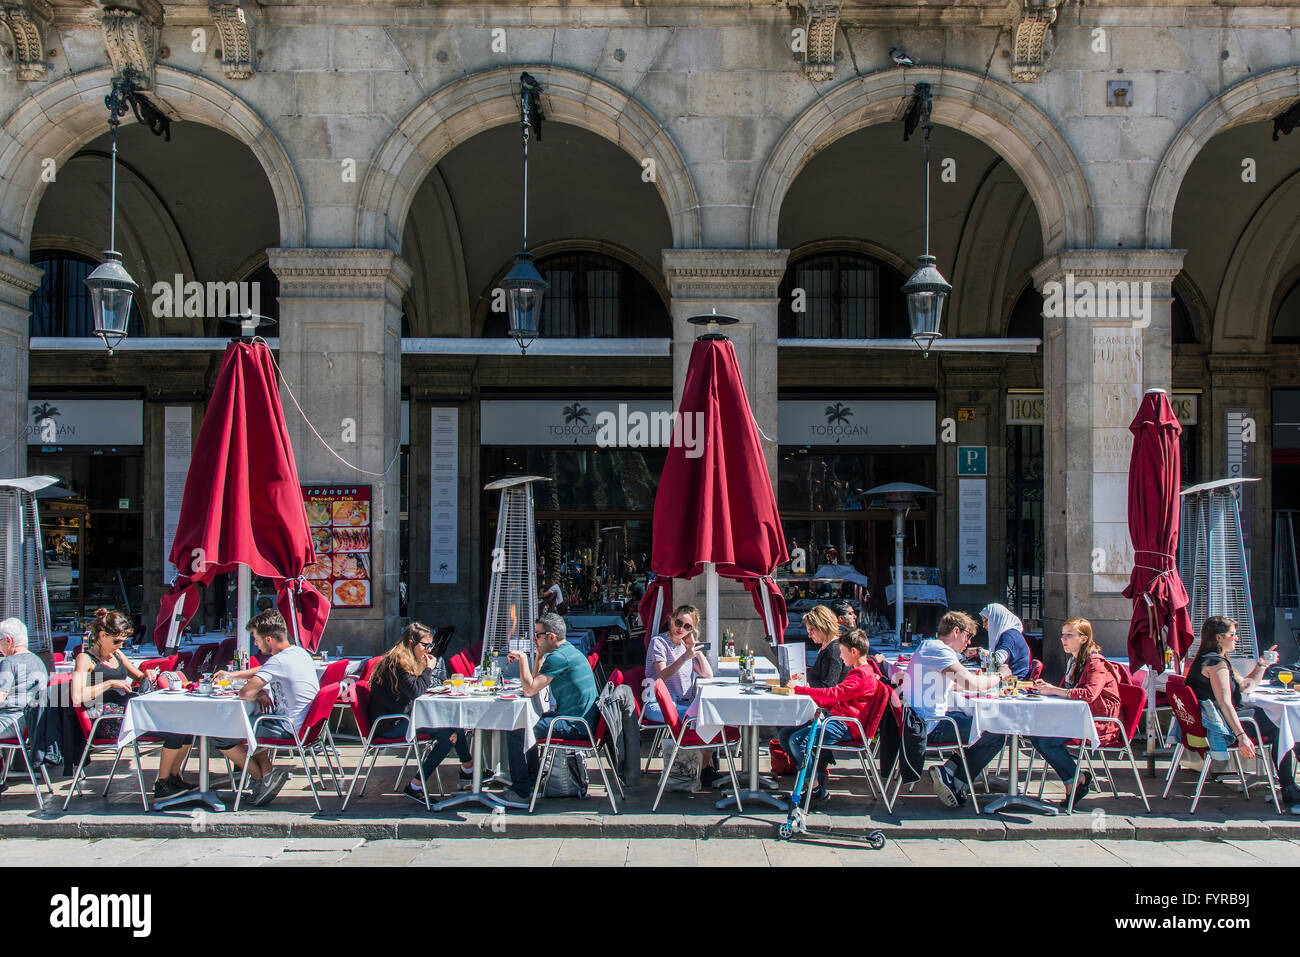 Café im Freien mit Touristen, die an den Tischen im Placa Reial oder Plaza Real, Barcelona, Katalonien, Spanien Stockfoto